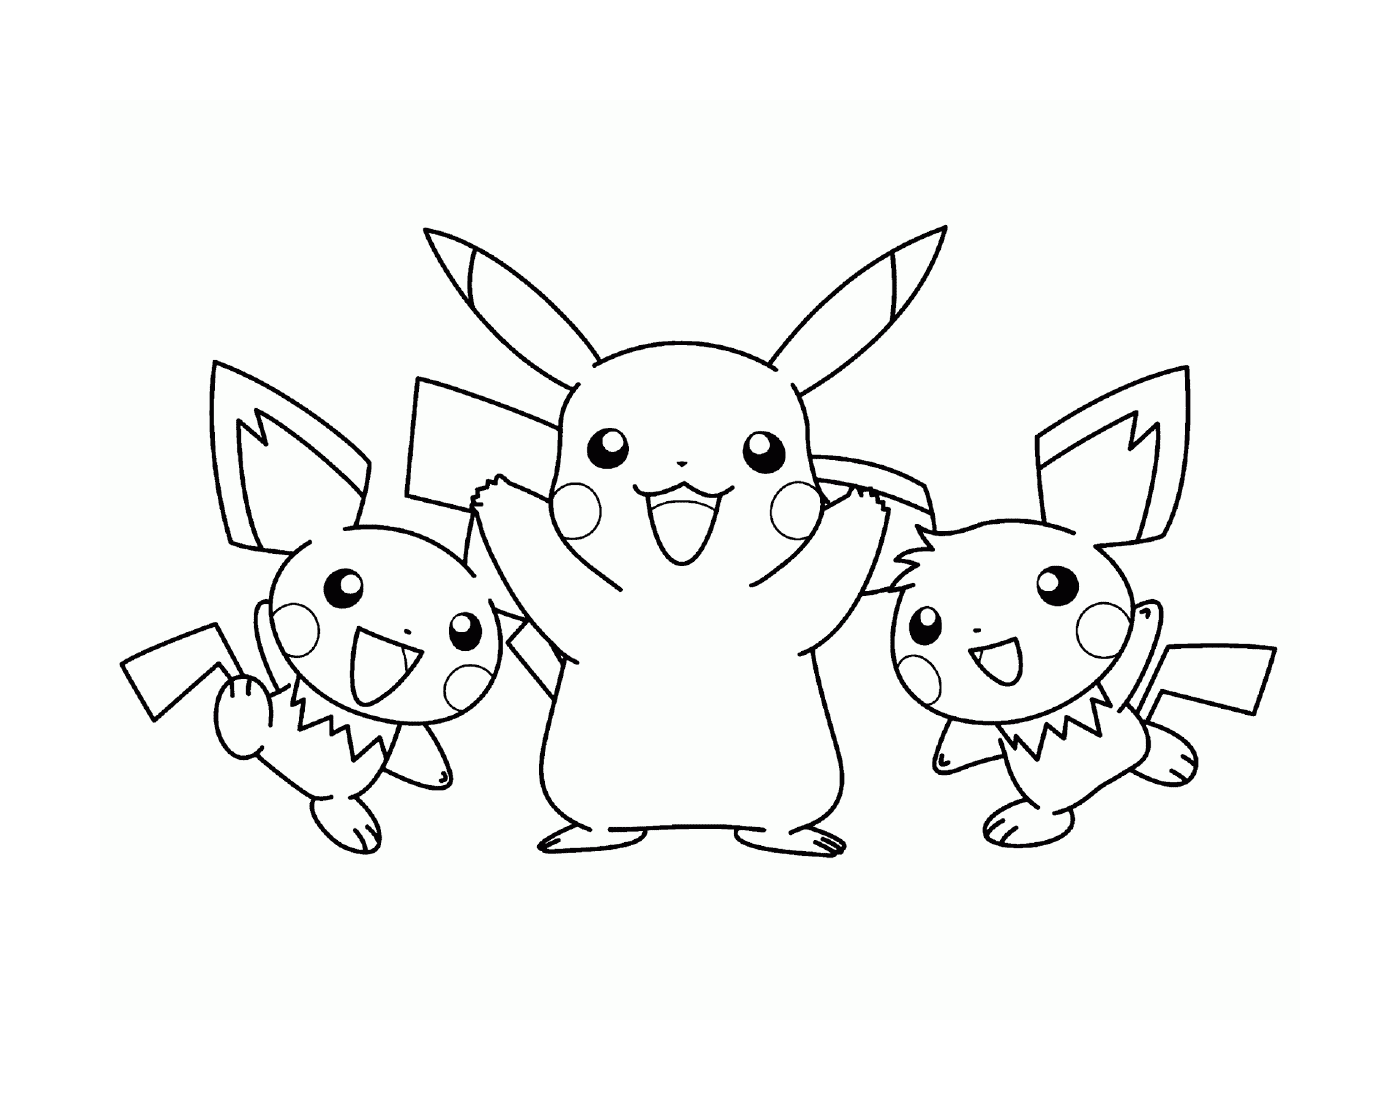  Drei Pikachus zusammen 